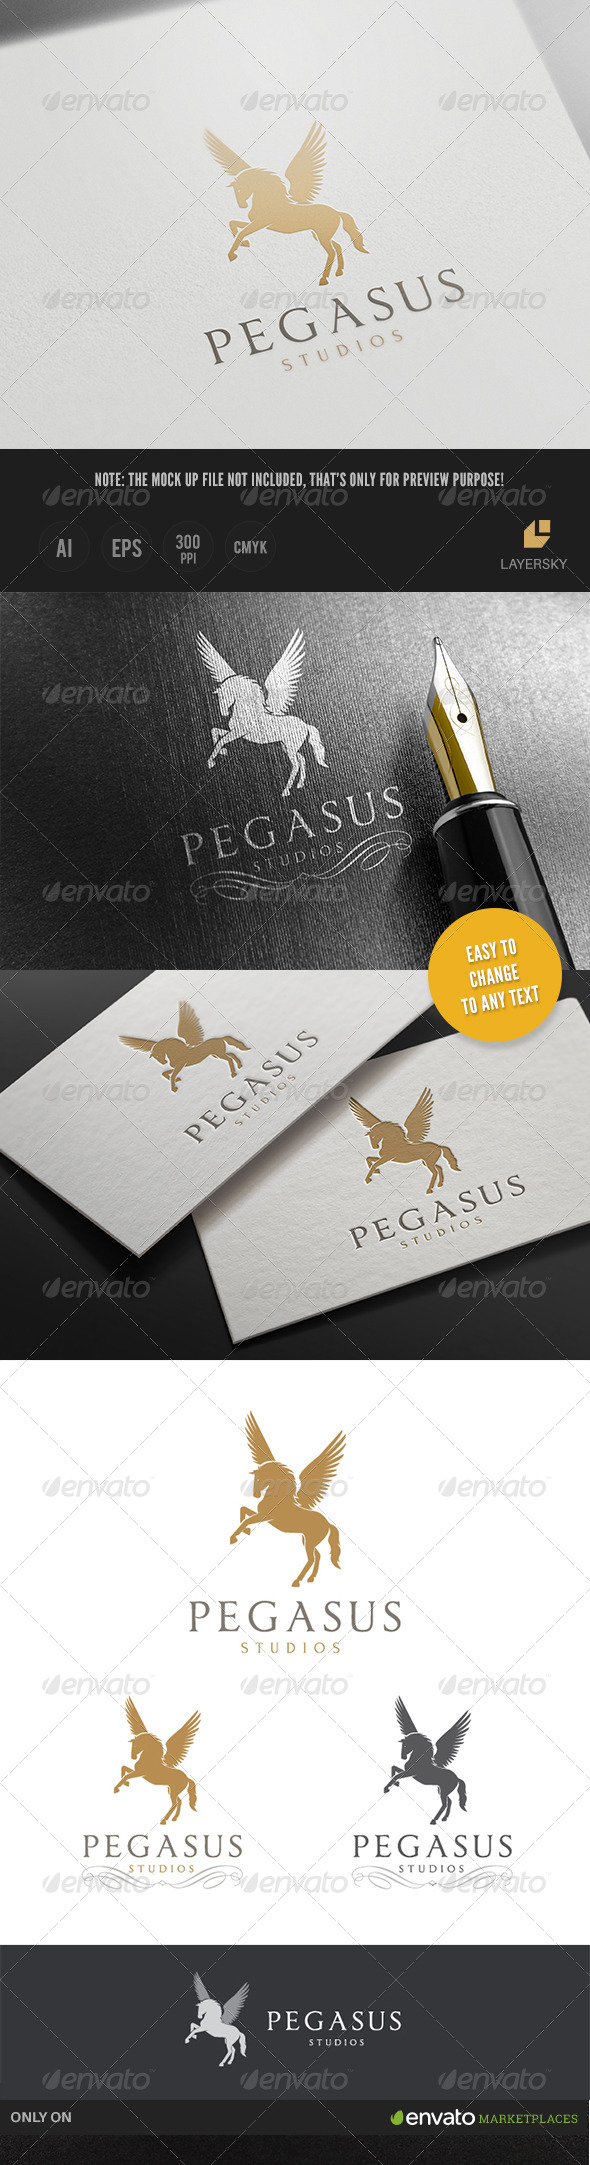 GraphicRiver Pegasus Studios 8370048